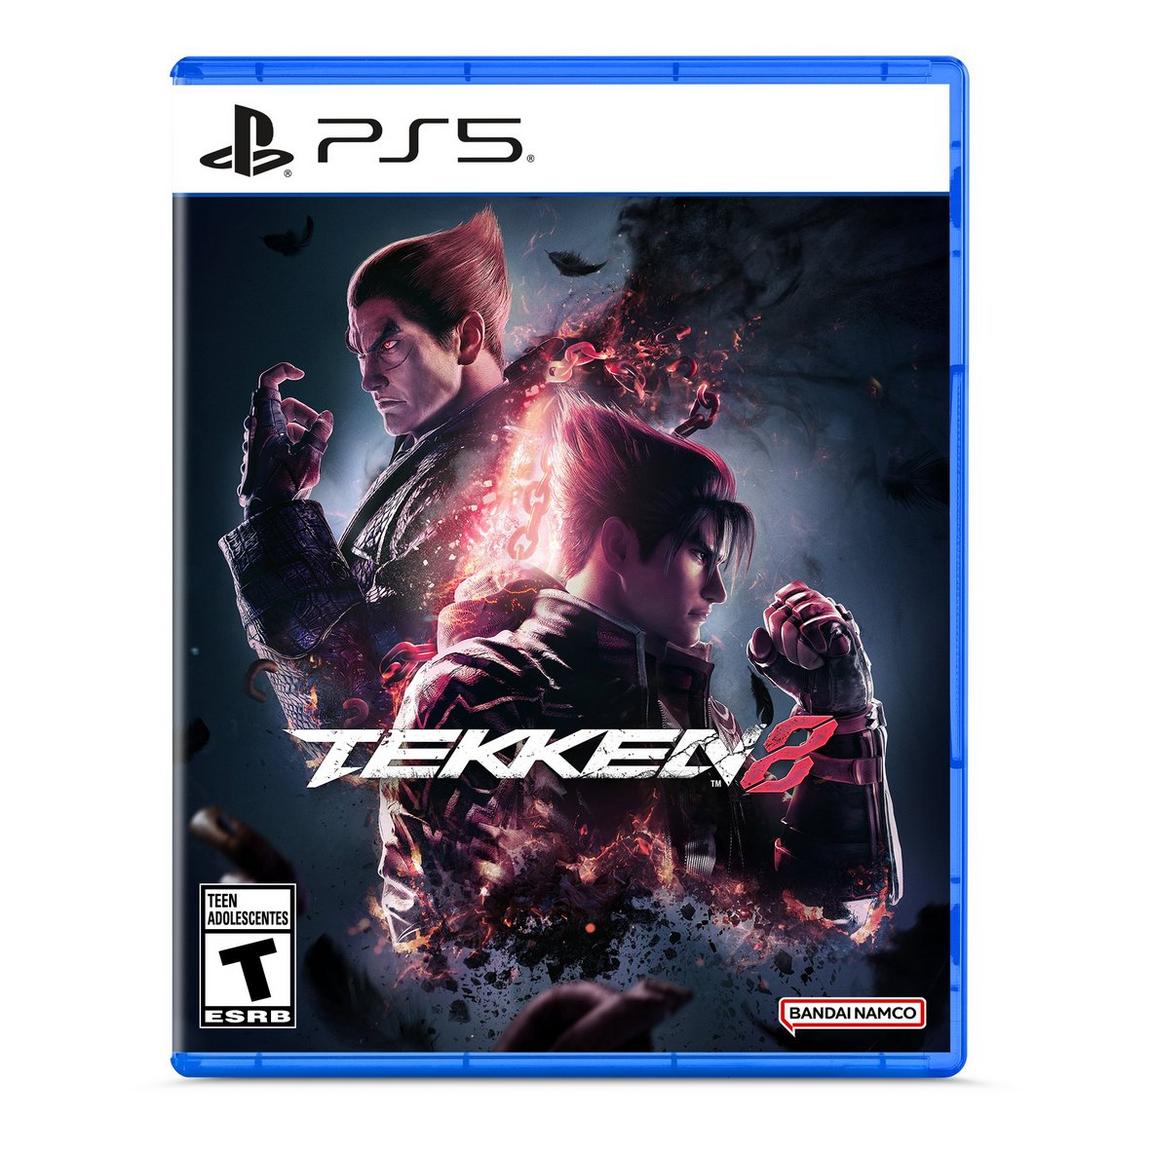 Видеоигра Tekken 8 - PlayStation 5 цена и фото